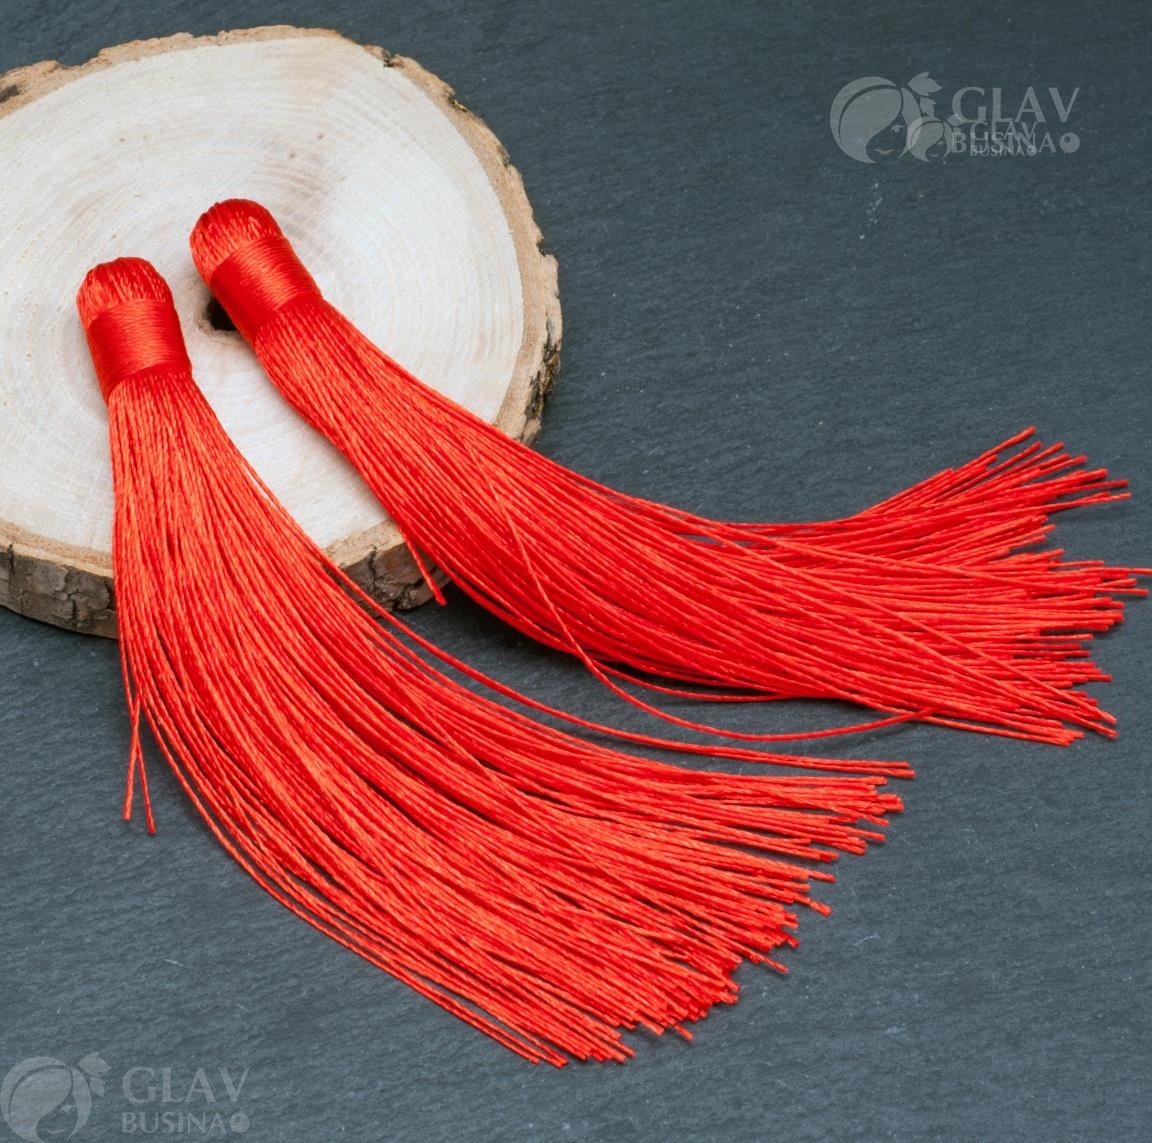 Большая красная декоративная кисточка из нейлона, размером 12х1см, блестящая, подходит для создания украшений и декора предметов.